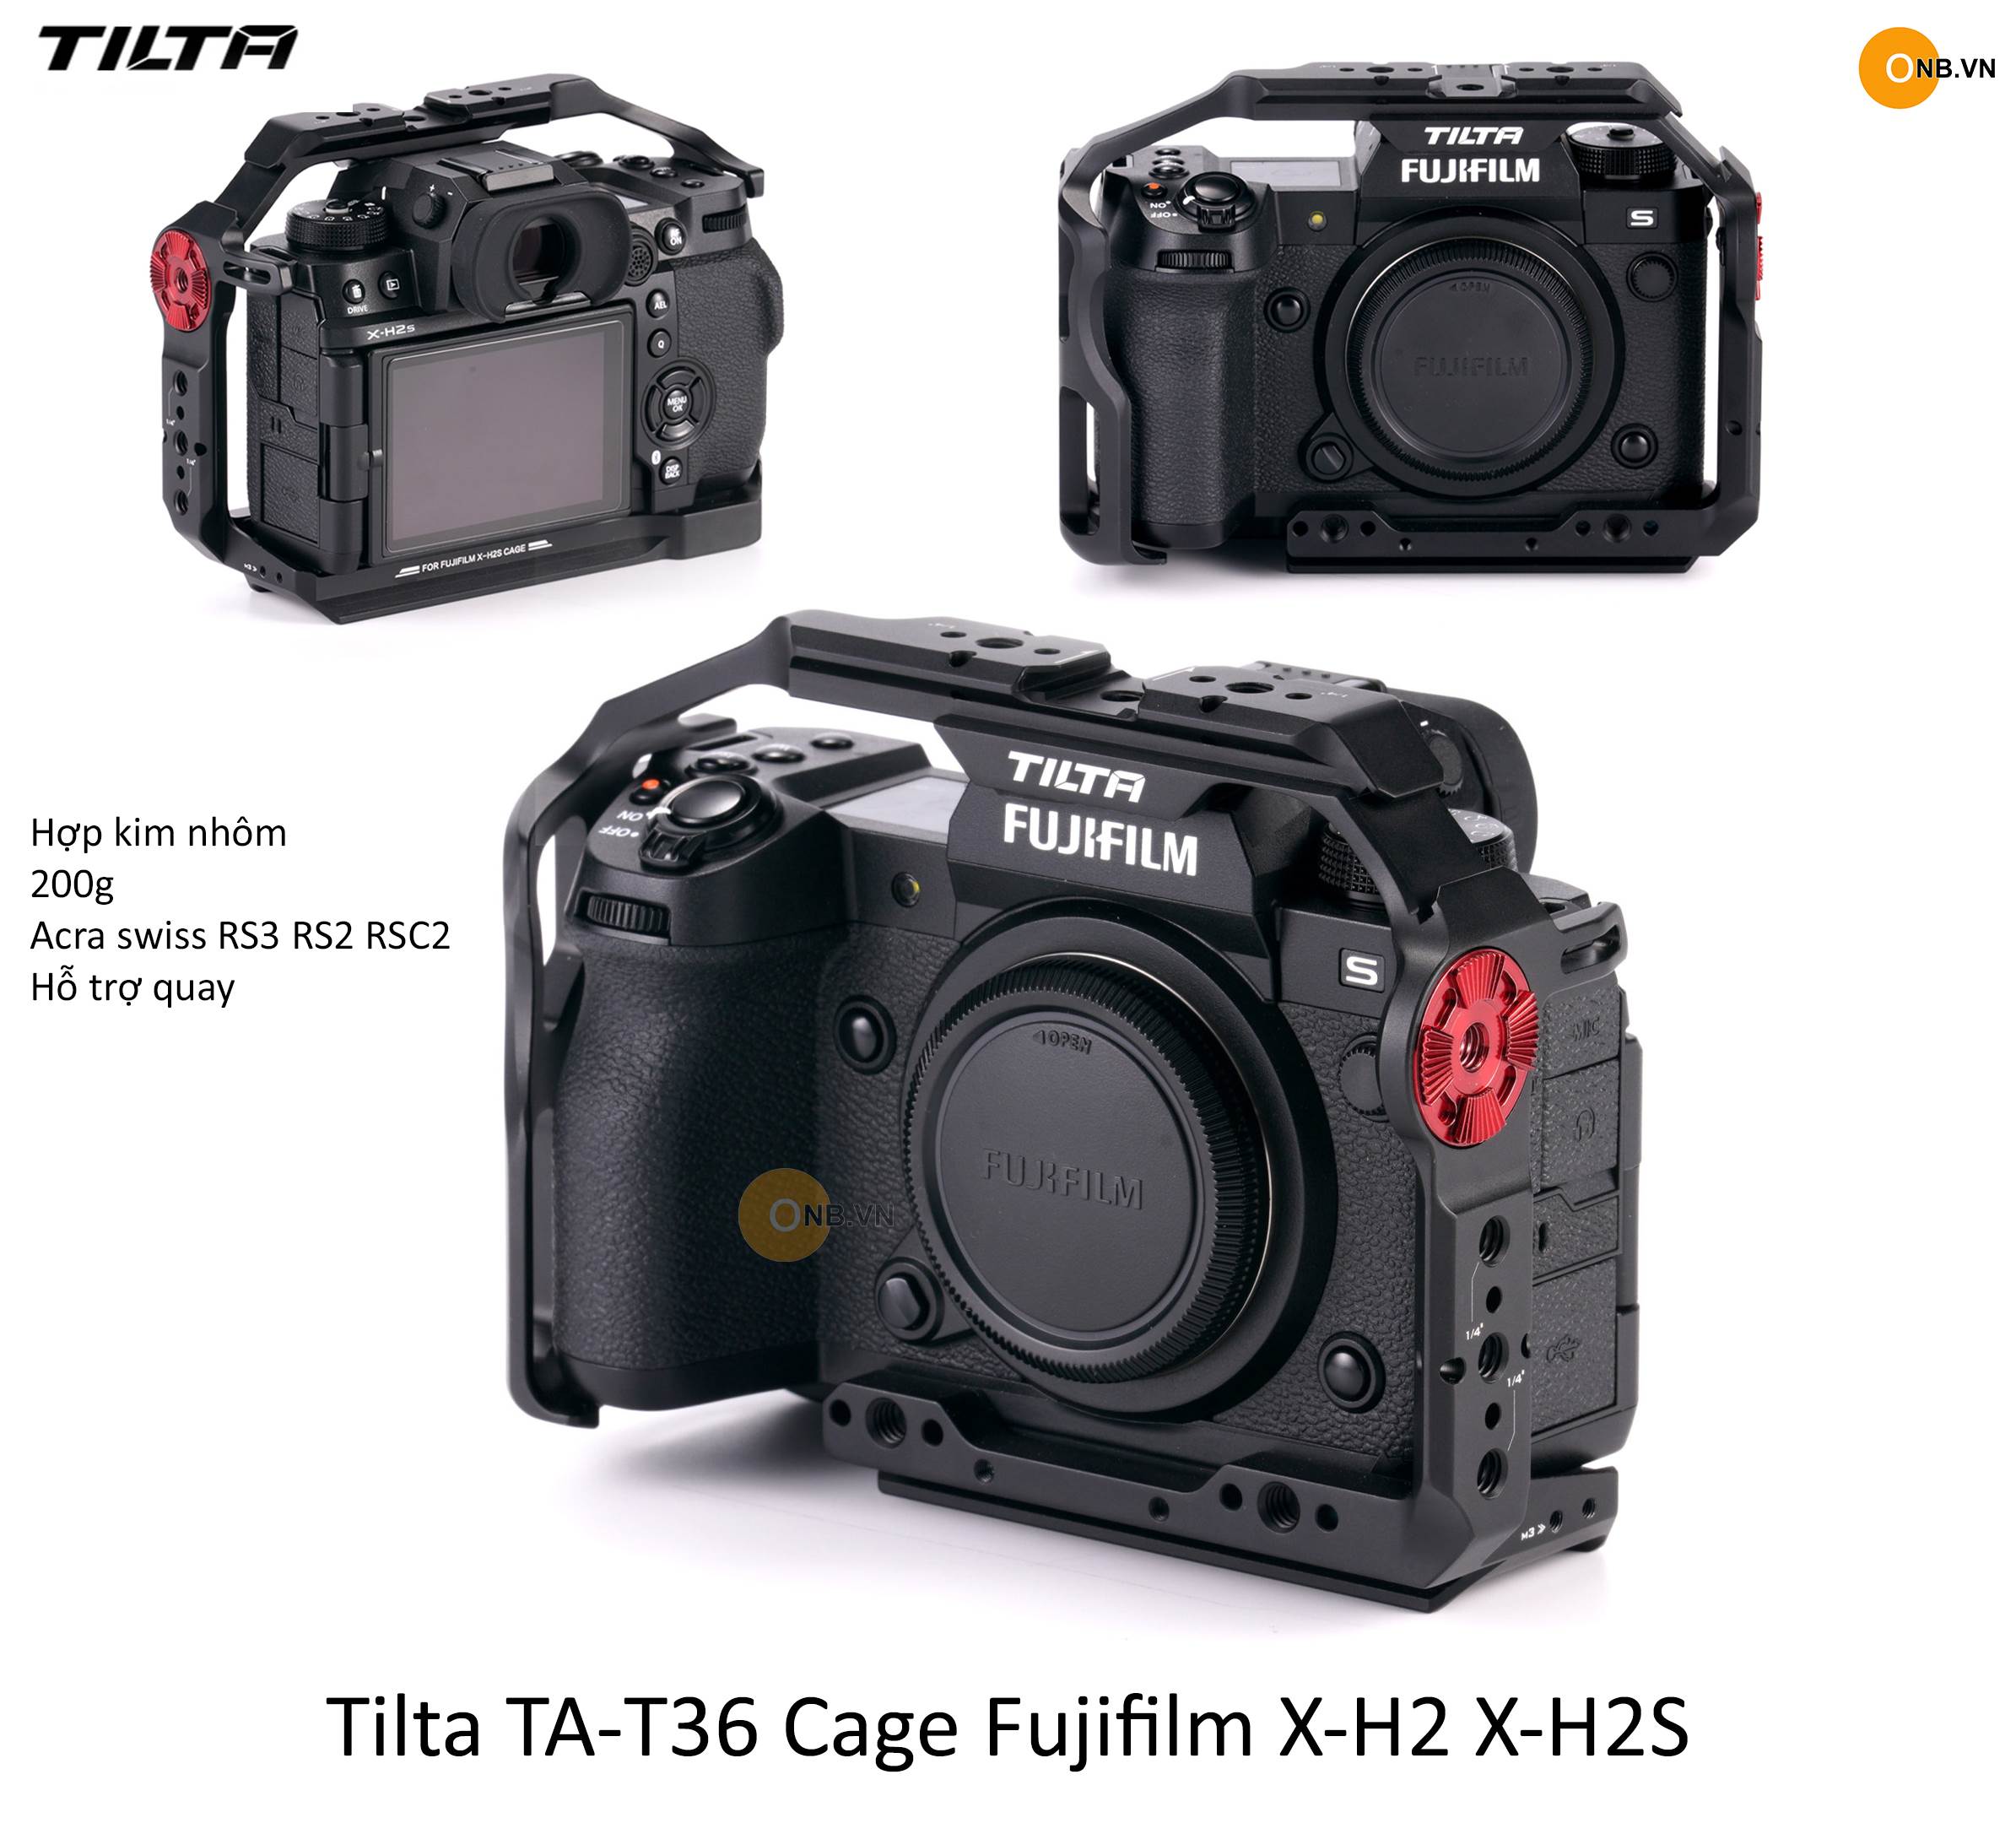 Tilta TA-T36 Cage Fujifilm X-H2 X-H2S XH2 XH2S